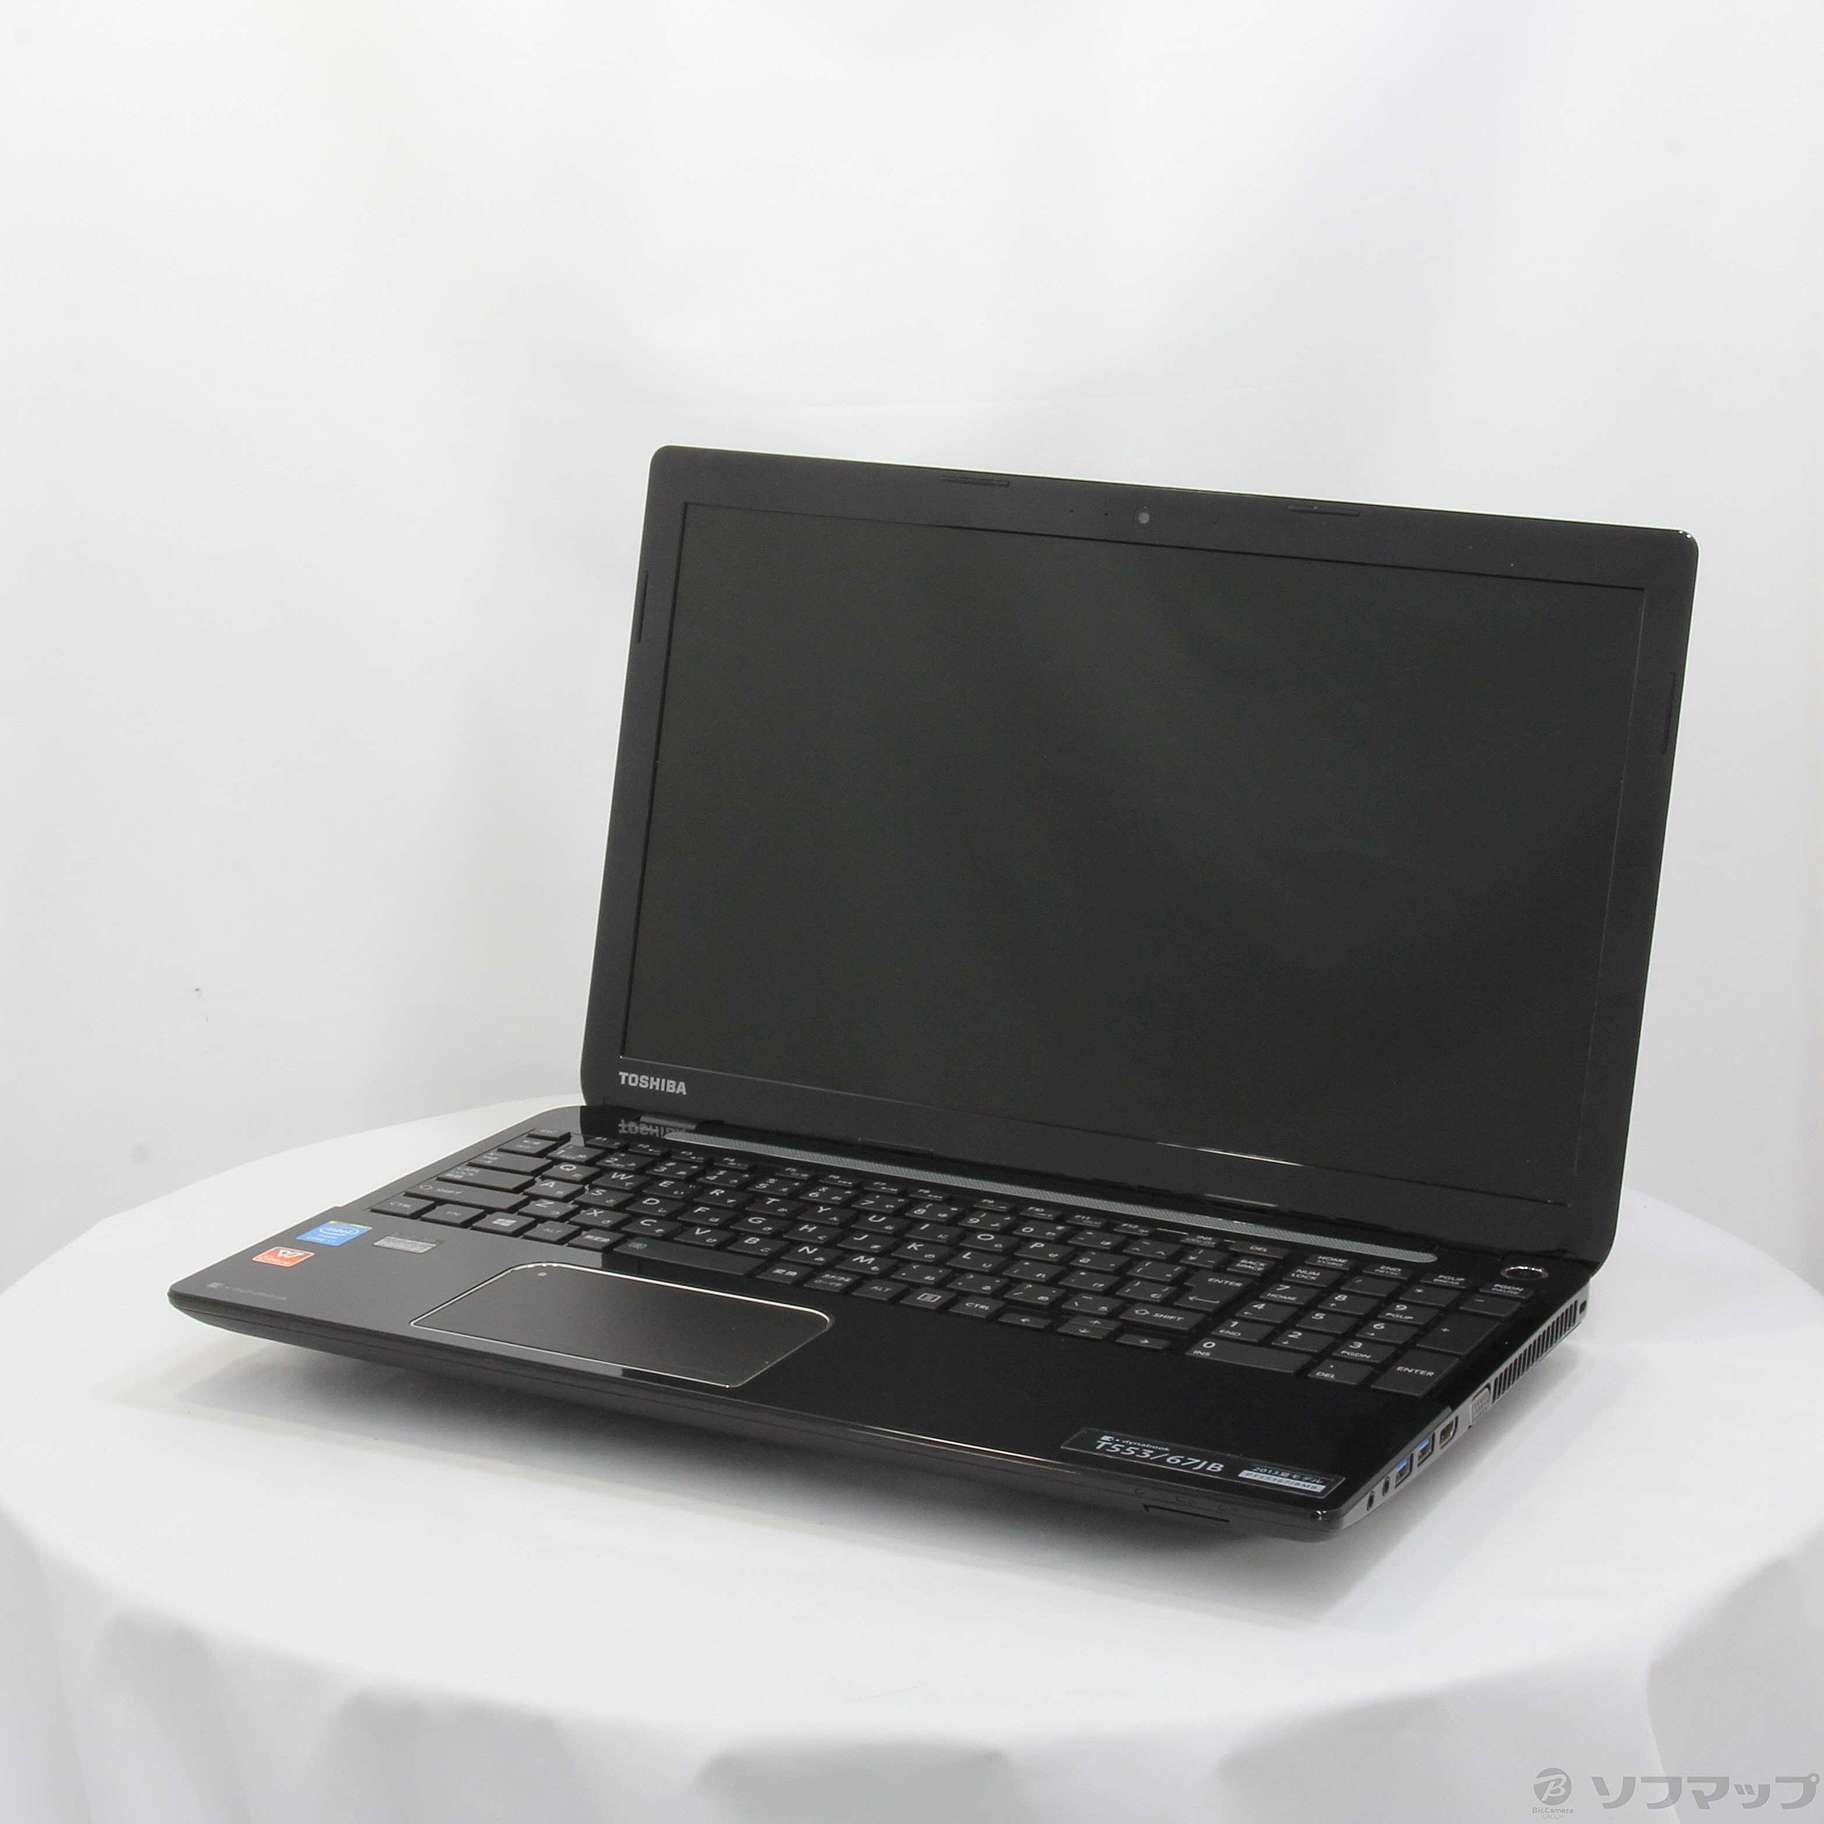 Toshiba Dynabook T553/67JB i7-4700MQ 8GB